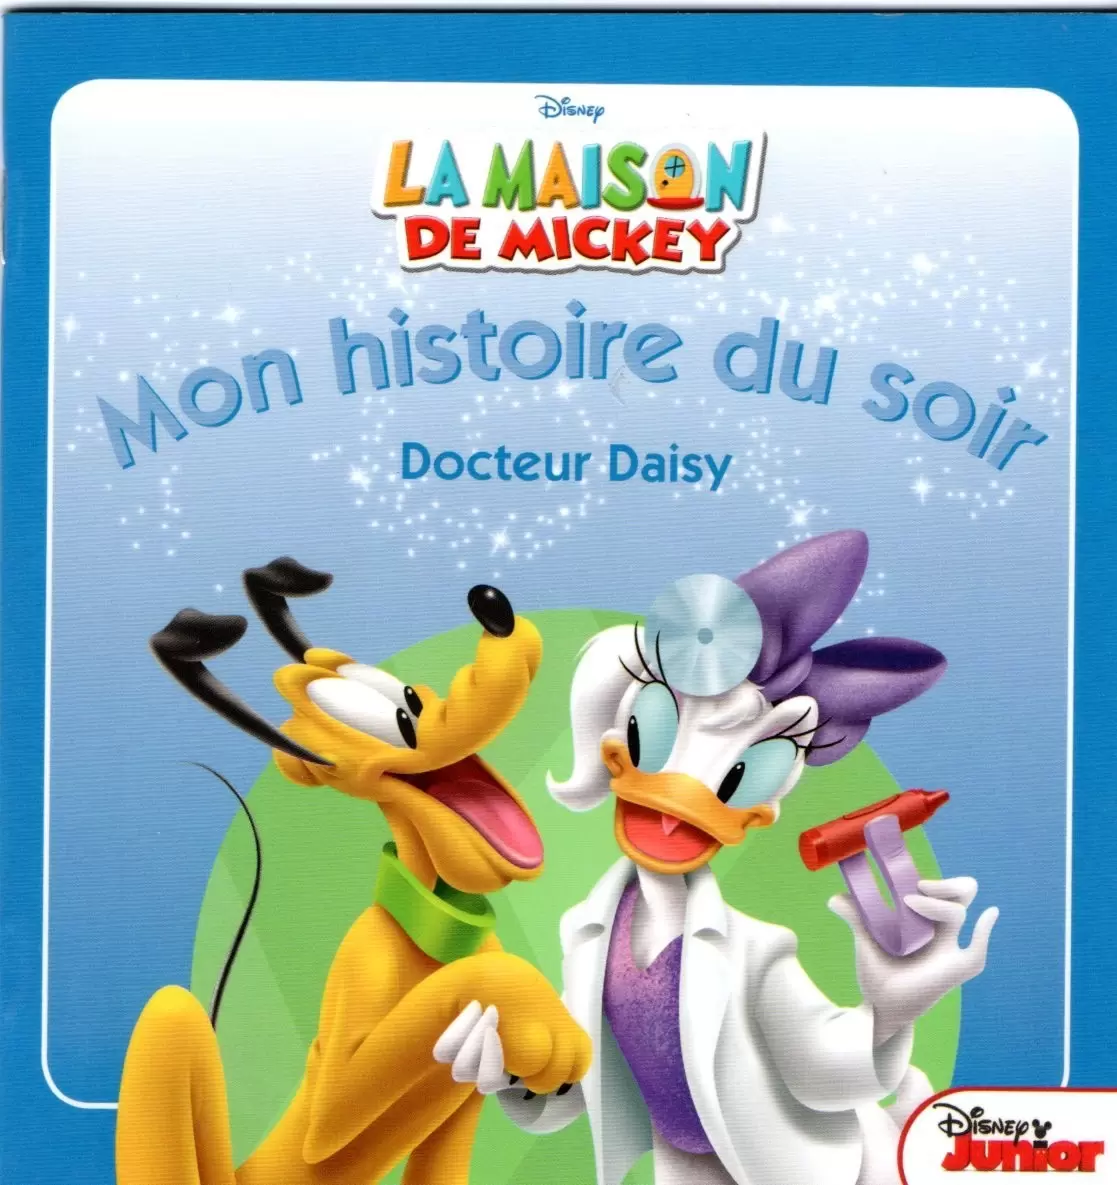 Mon histoire du soir - La Maison de mickey - Docteur Daisy